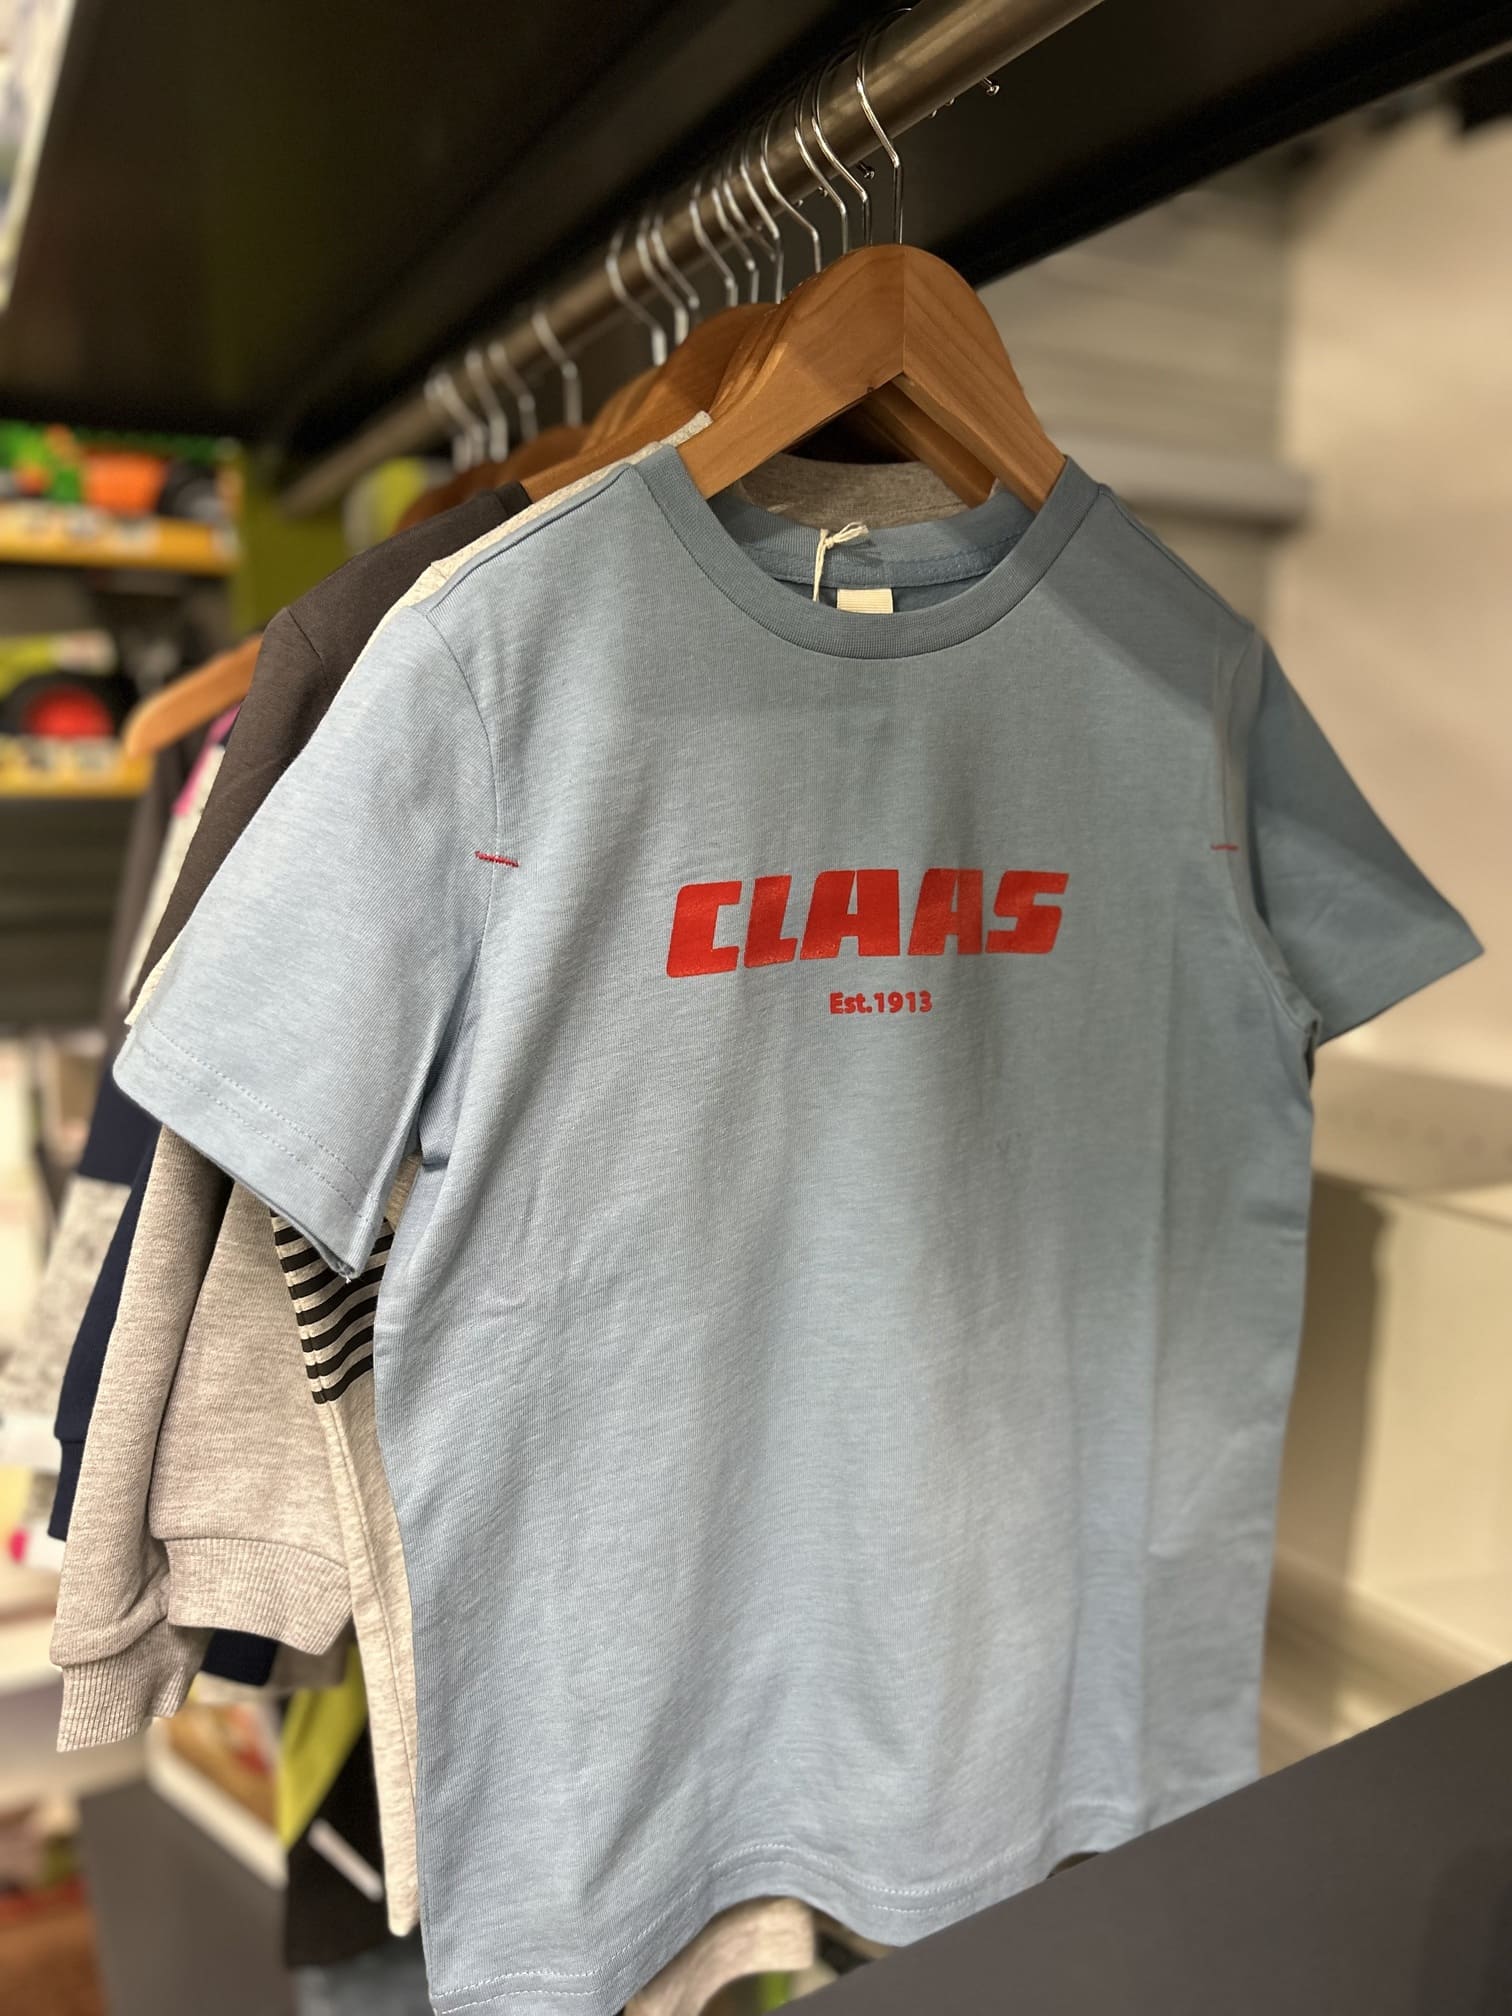 T-shirt bleu CLAAS pour enfant chez J-F AGRI à Schlierbach